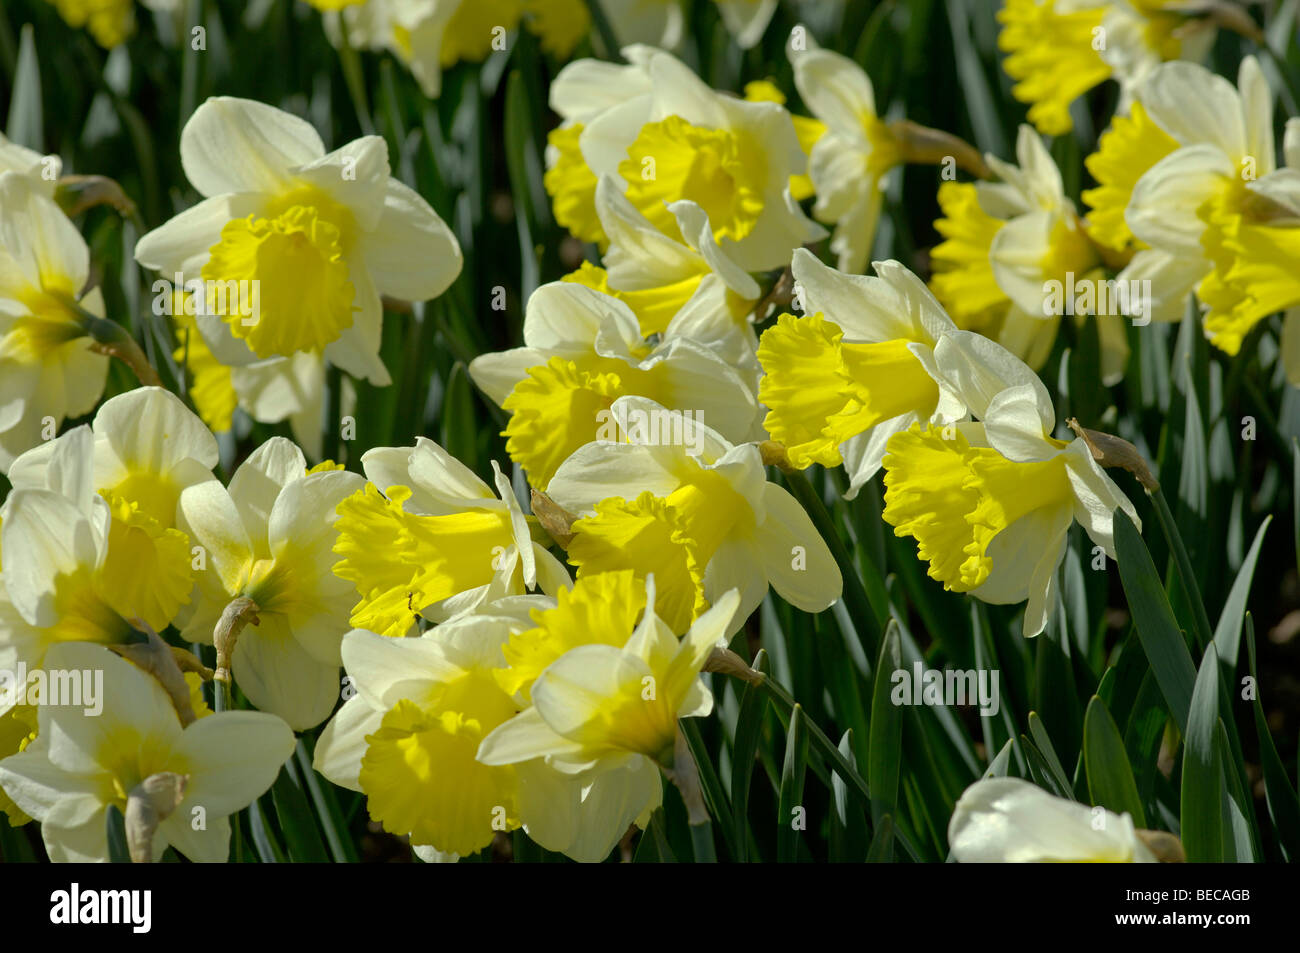 Trompette jonquilles (Narcissus hybrides) dans un lit de fleur Banque D'Images